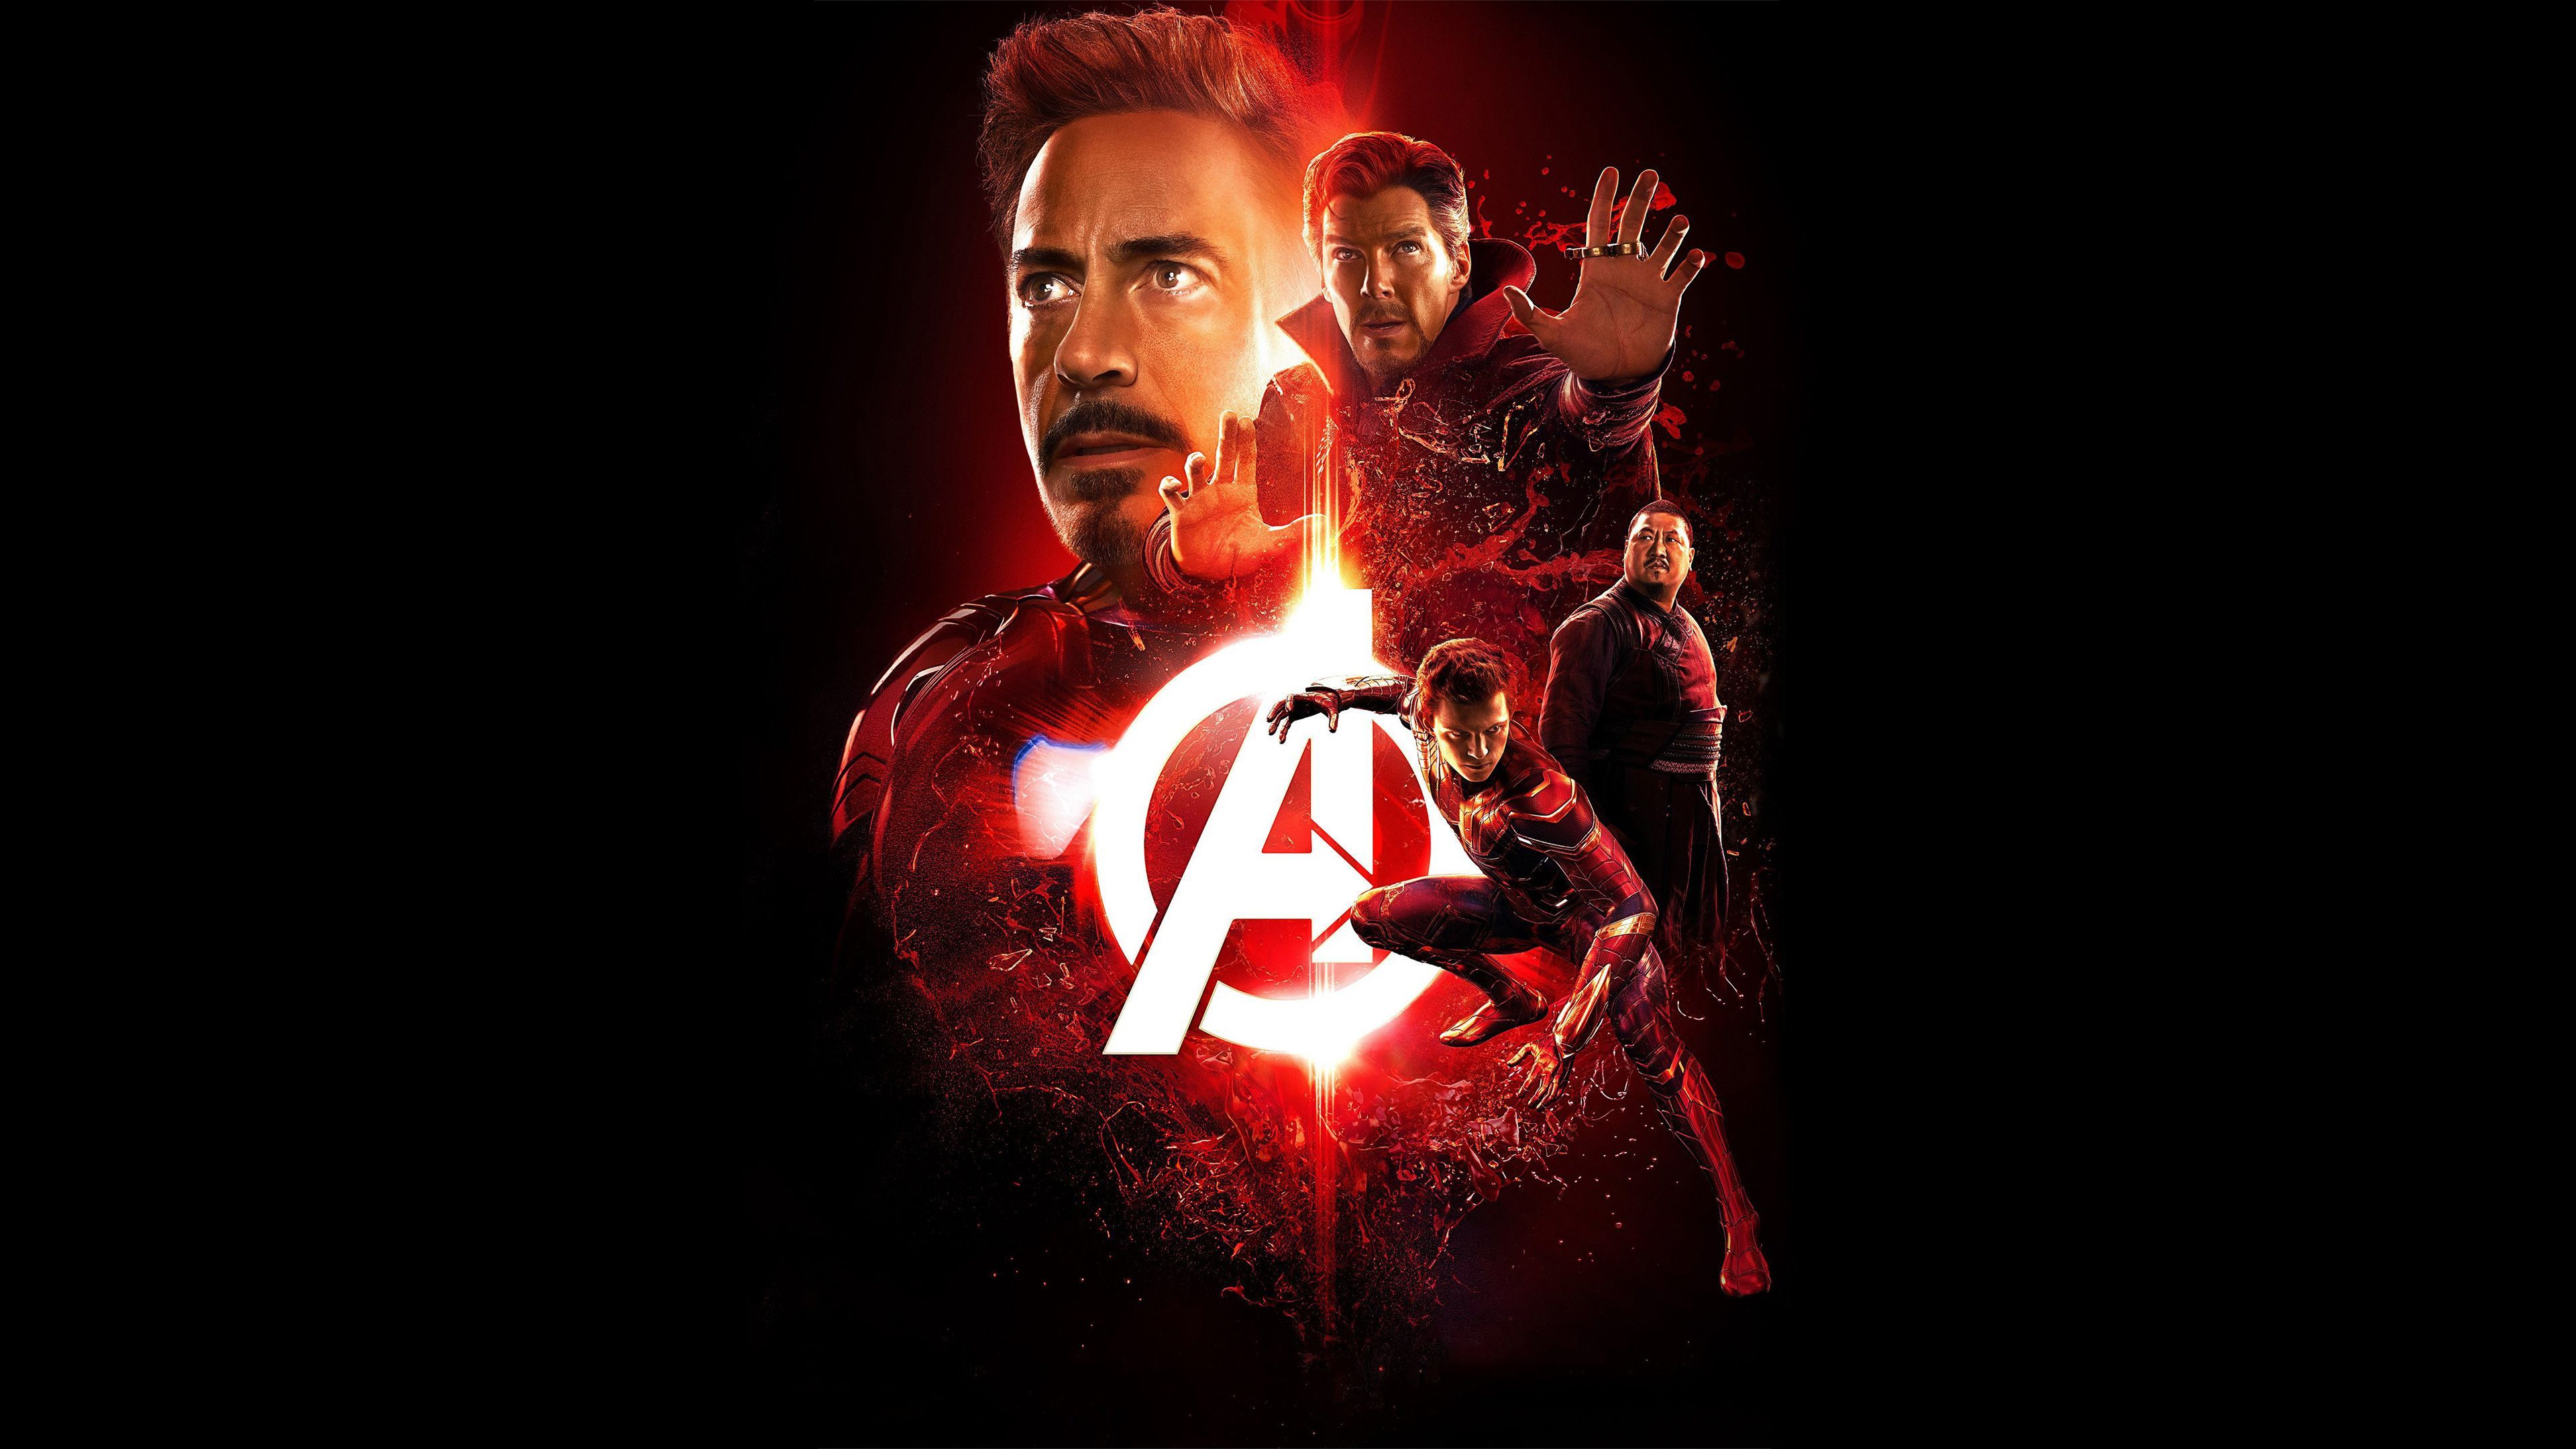 Avengers infinity war wallpaper hd - Tom Holland